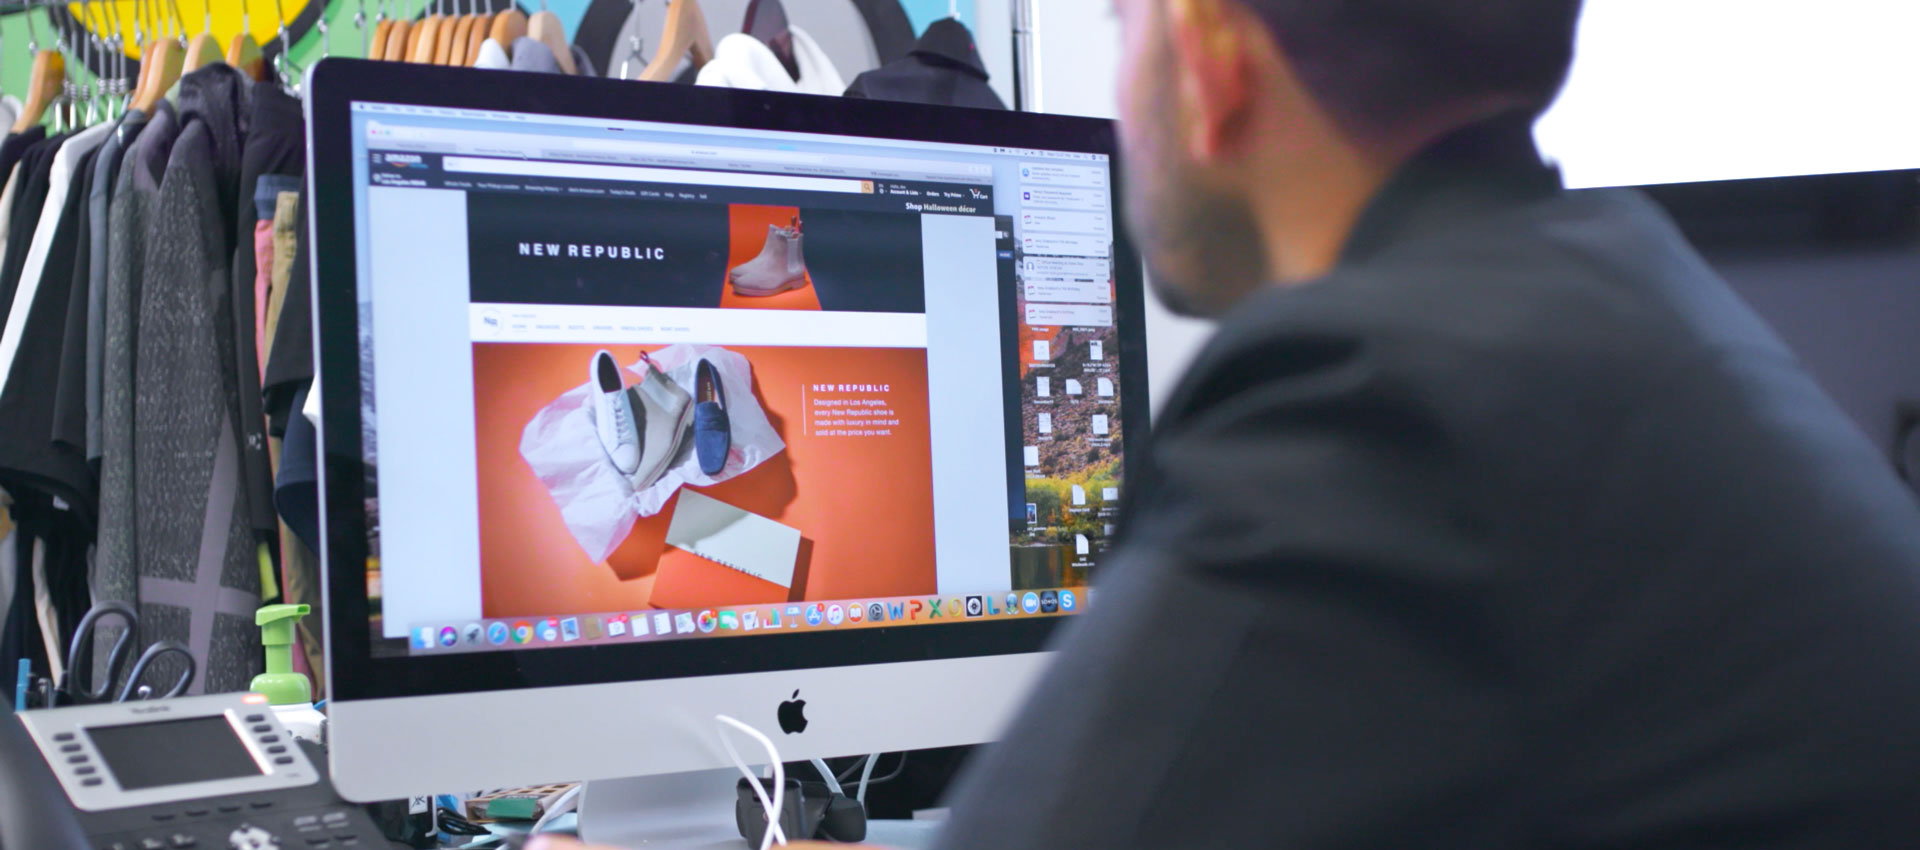 Un hombre mira la pantalla de una computadora en la que se muestra una tienda virtual en amazon.com de la marca de moda New Republic